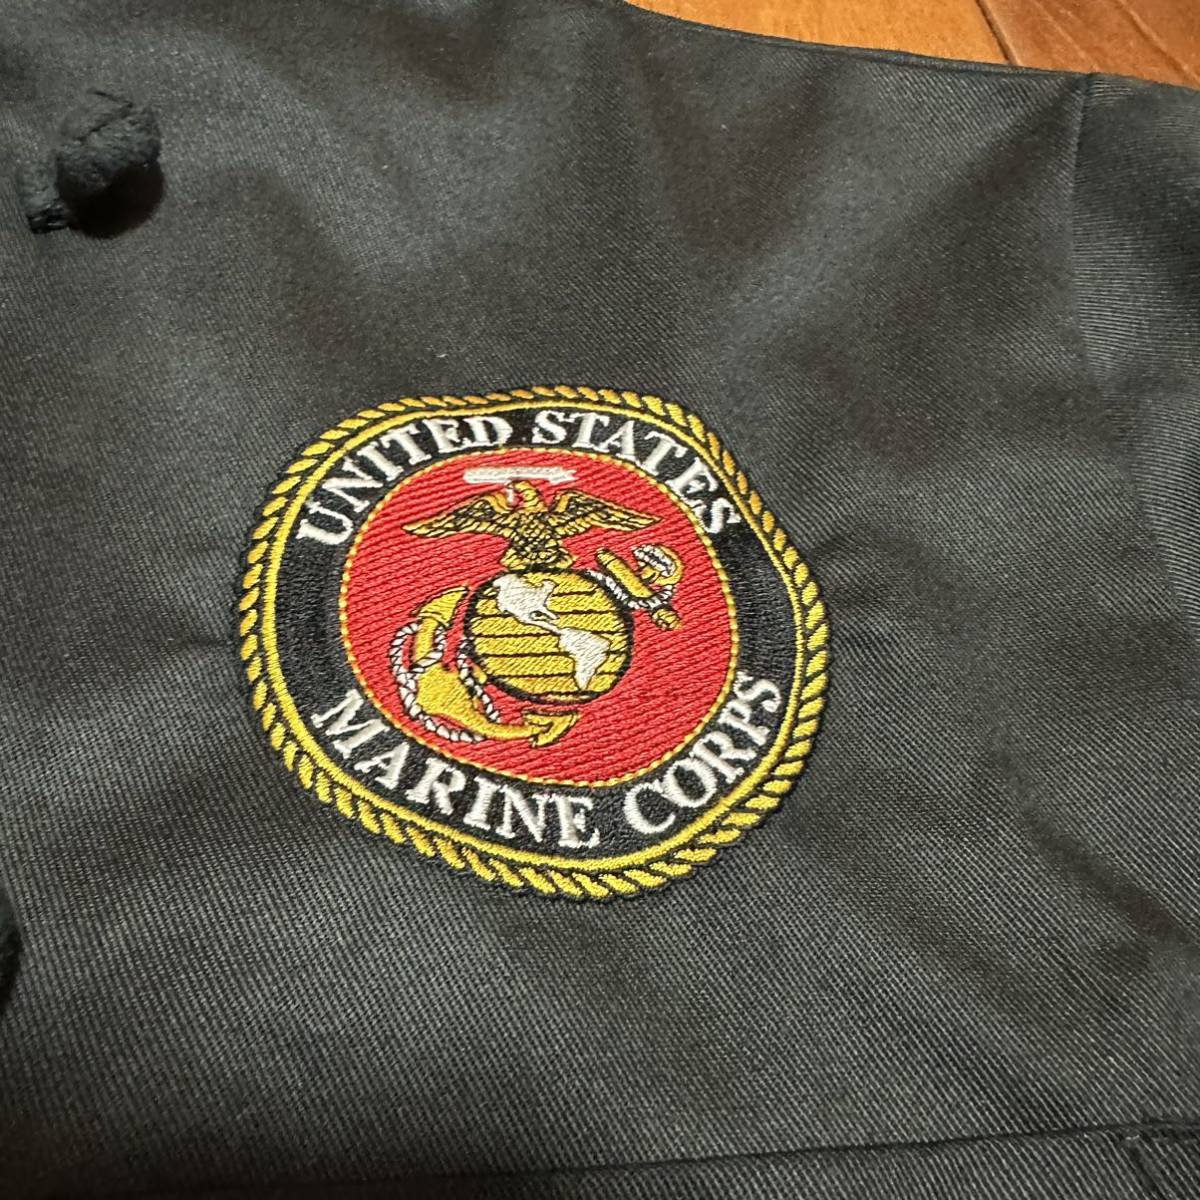  Okinawa вооруженные силы США сброшенный товар USMC MARINE CHEF SHIRTS милитари рубашка shef стиль мода костюмированная игра костюм MEDIUM ( контрольный номер G56)